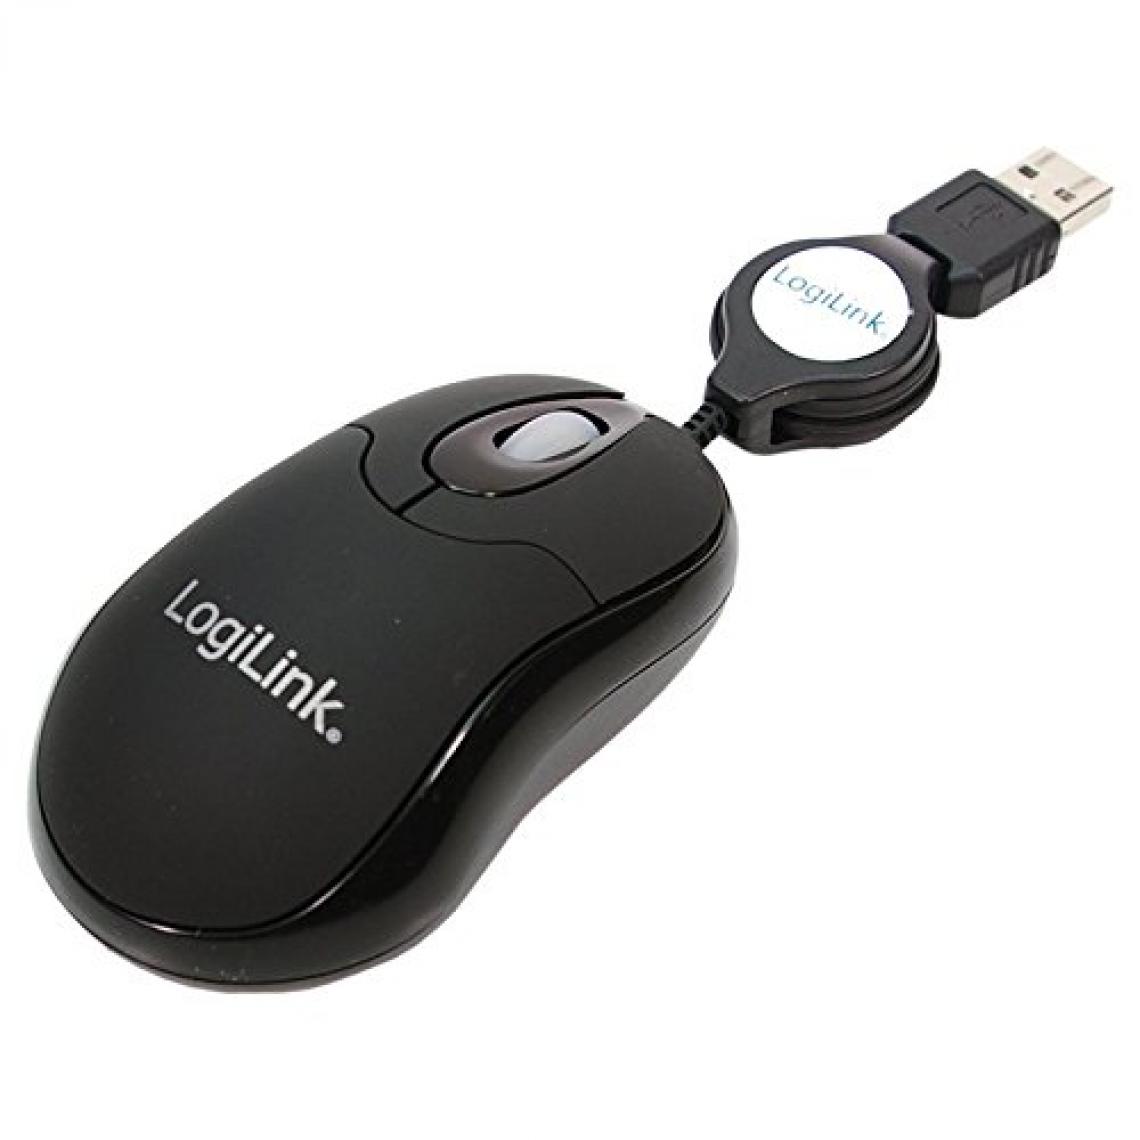 Logilink - Mini Souris filaire pour portable (rétractable) (Noir) - Souris